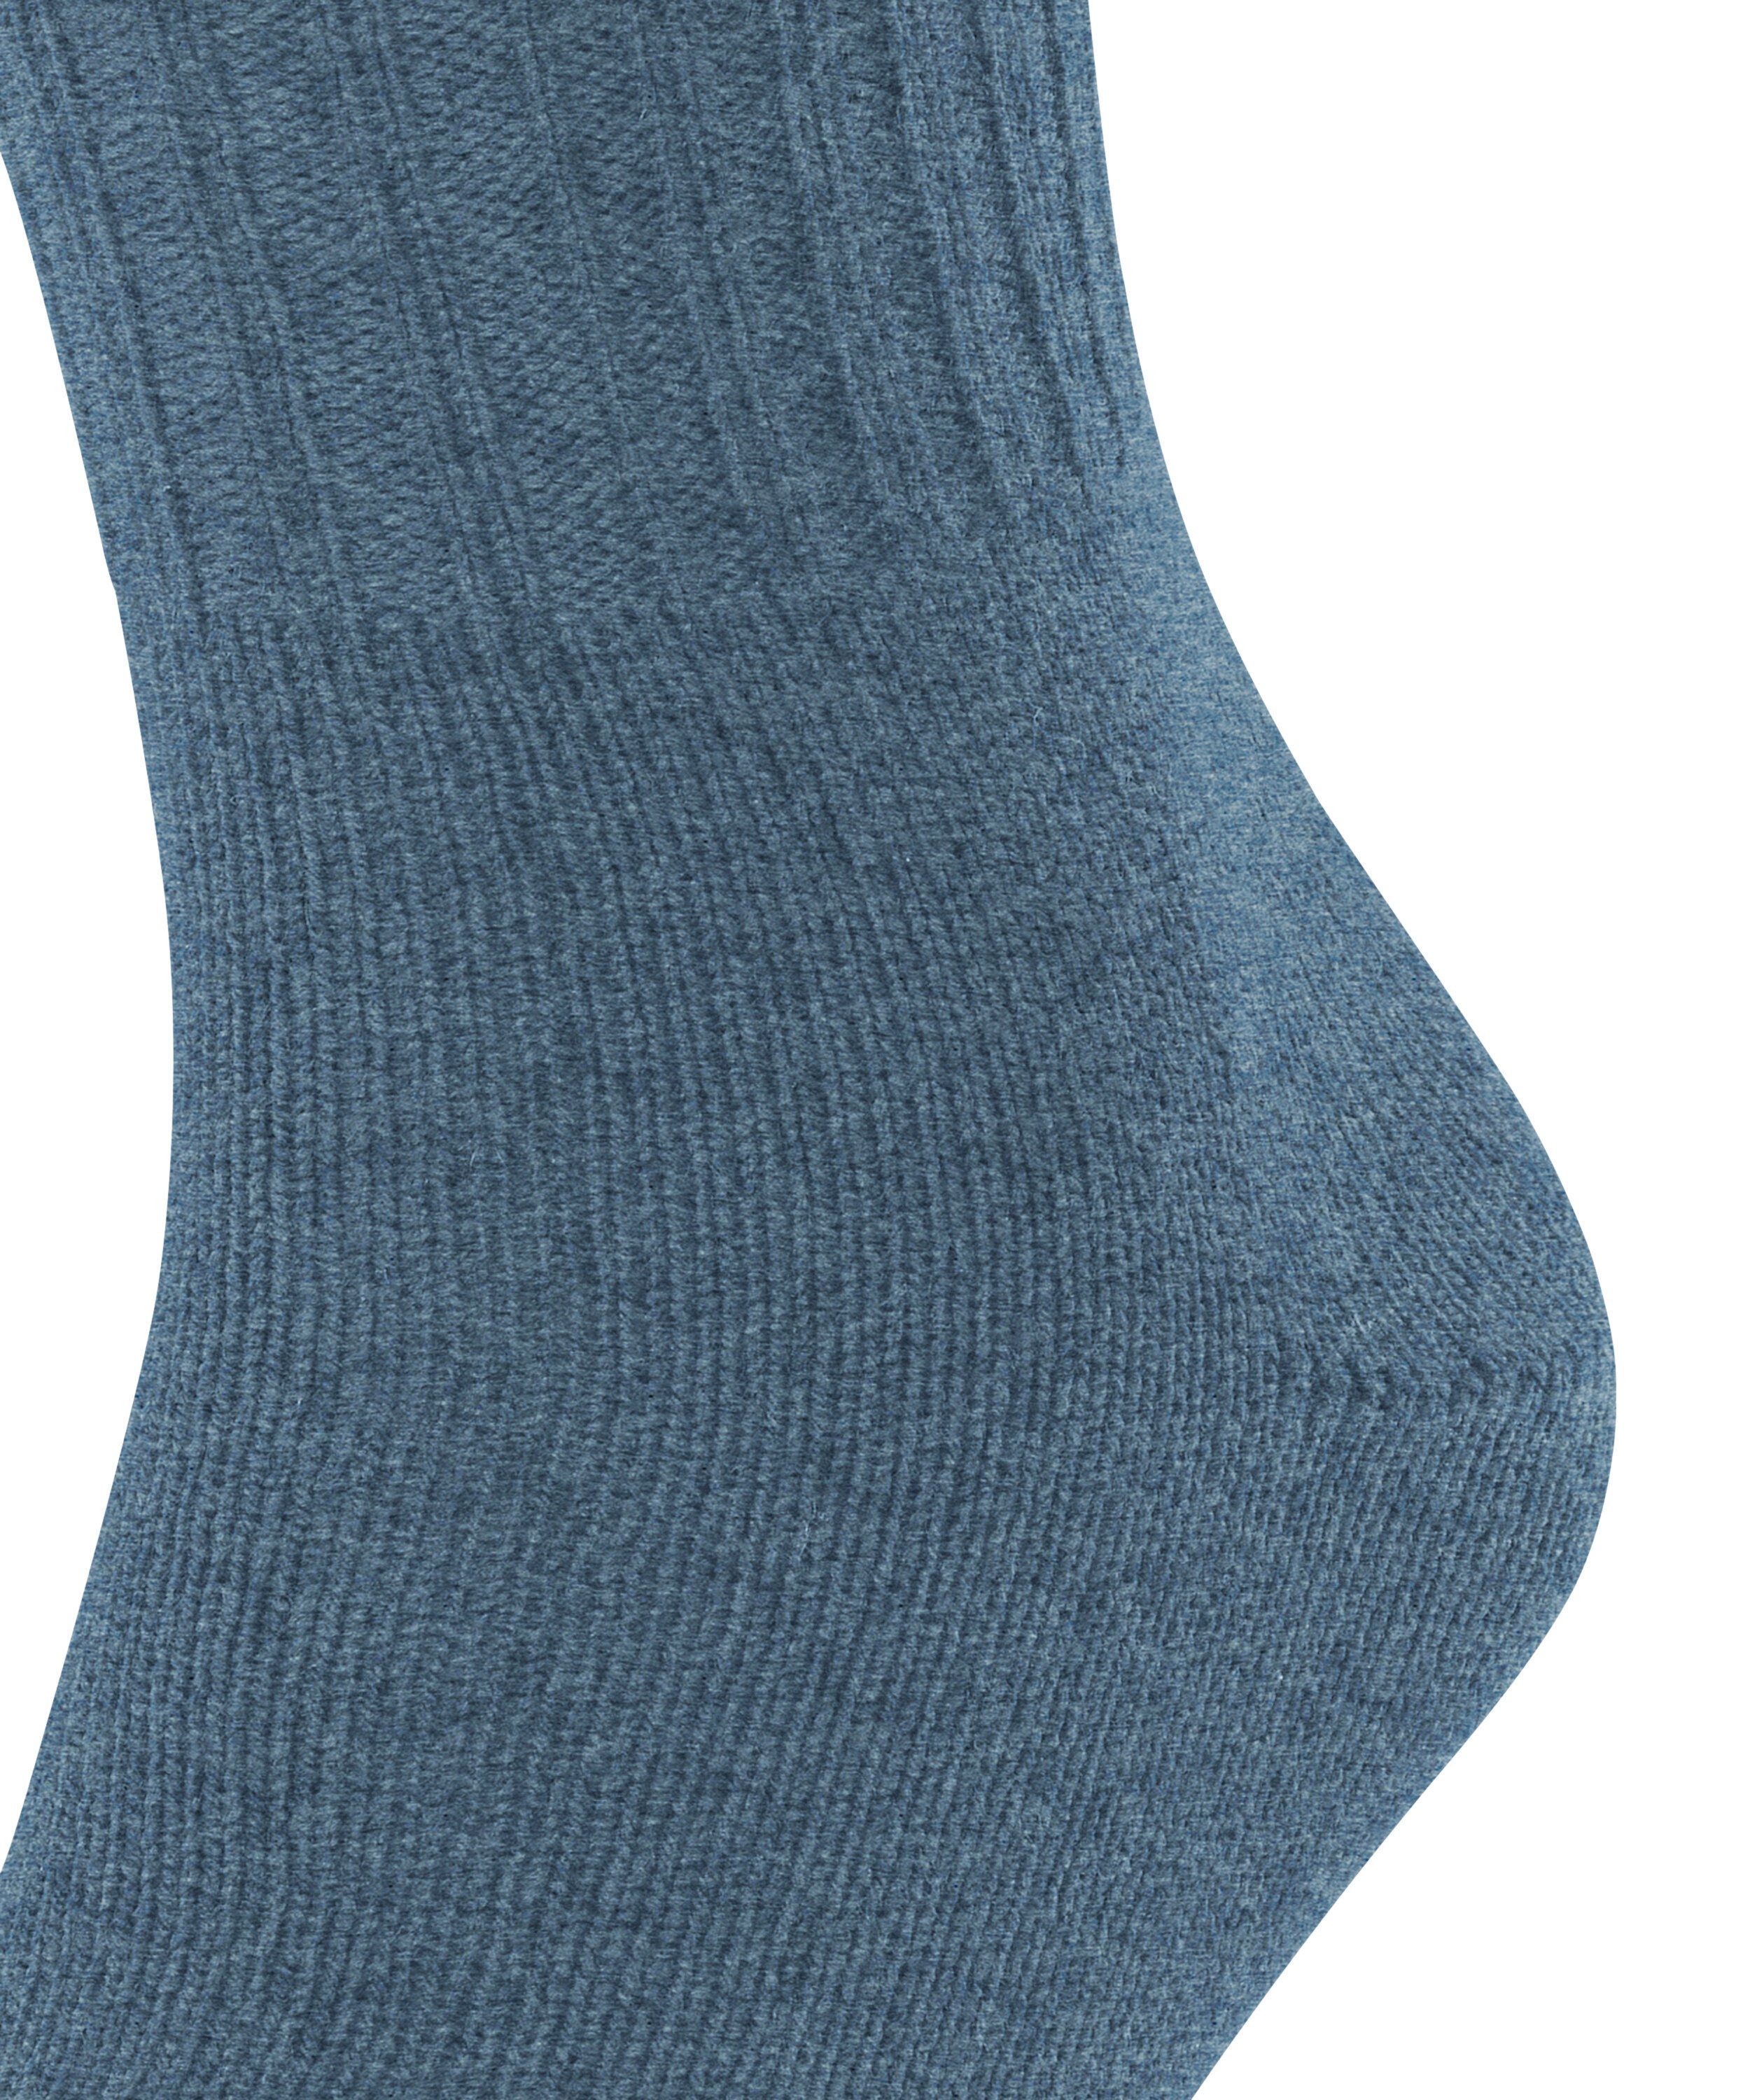 light Nelson FALKE (1-Paar) Socken (6660) denim